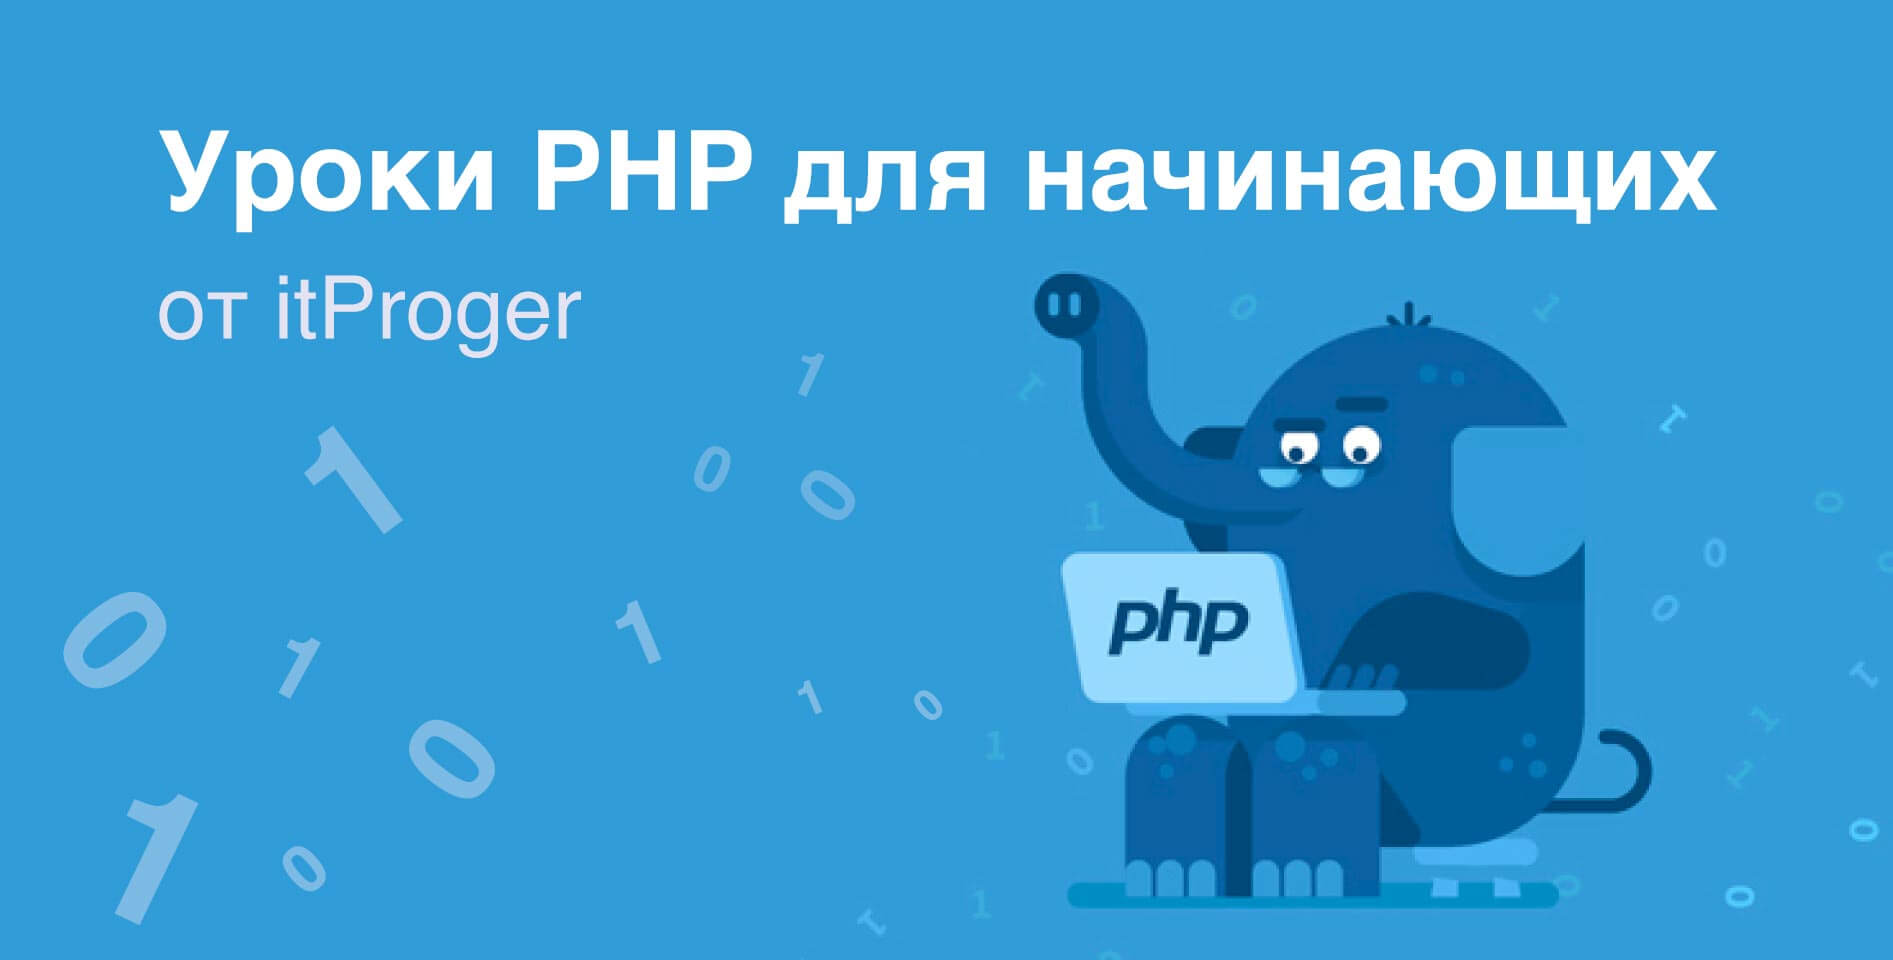 itProger — Уроки PHP для начинающих